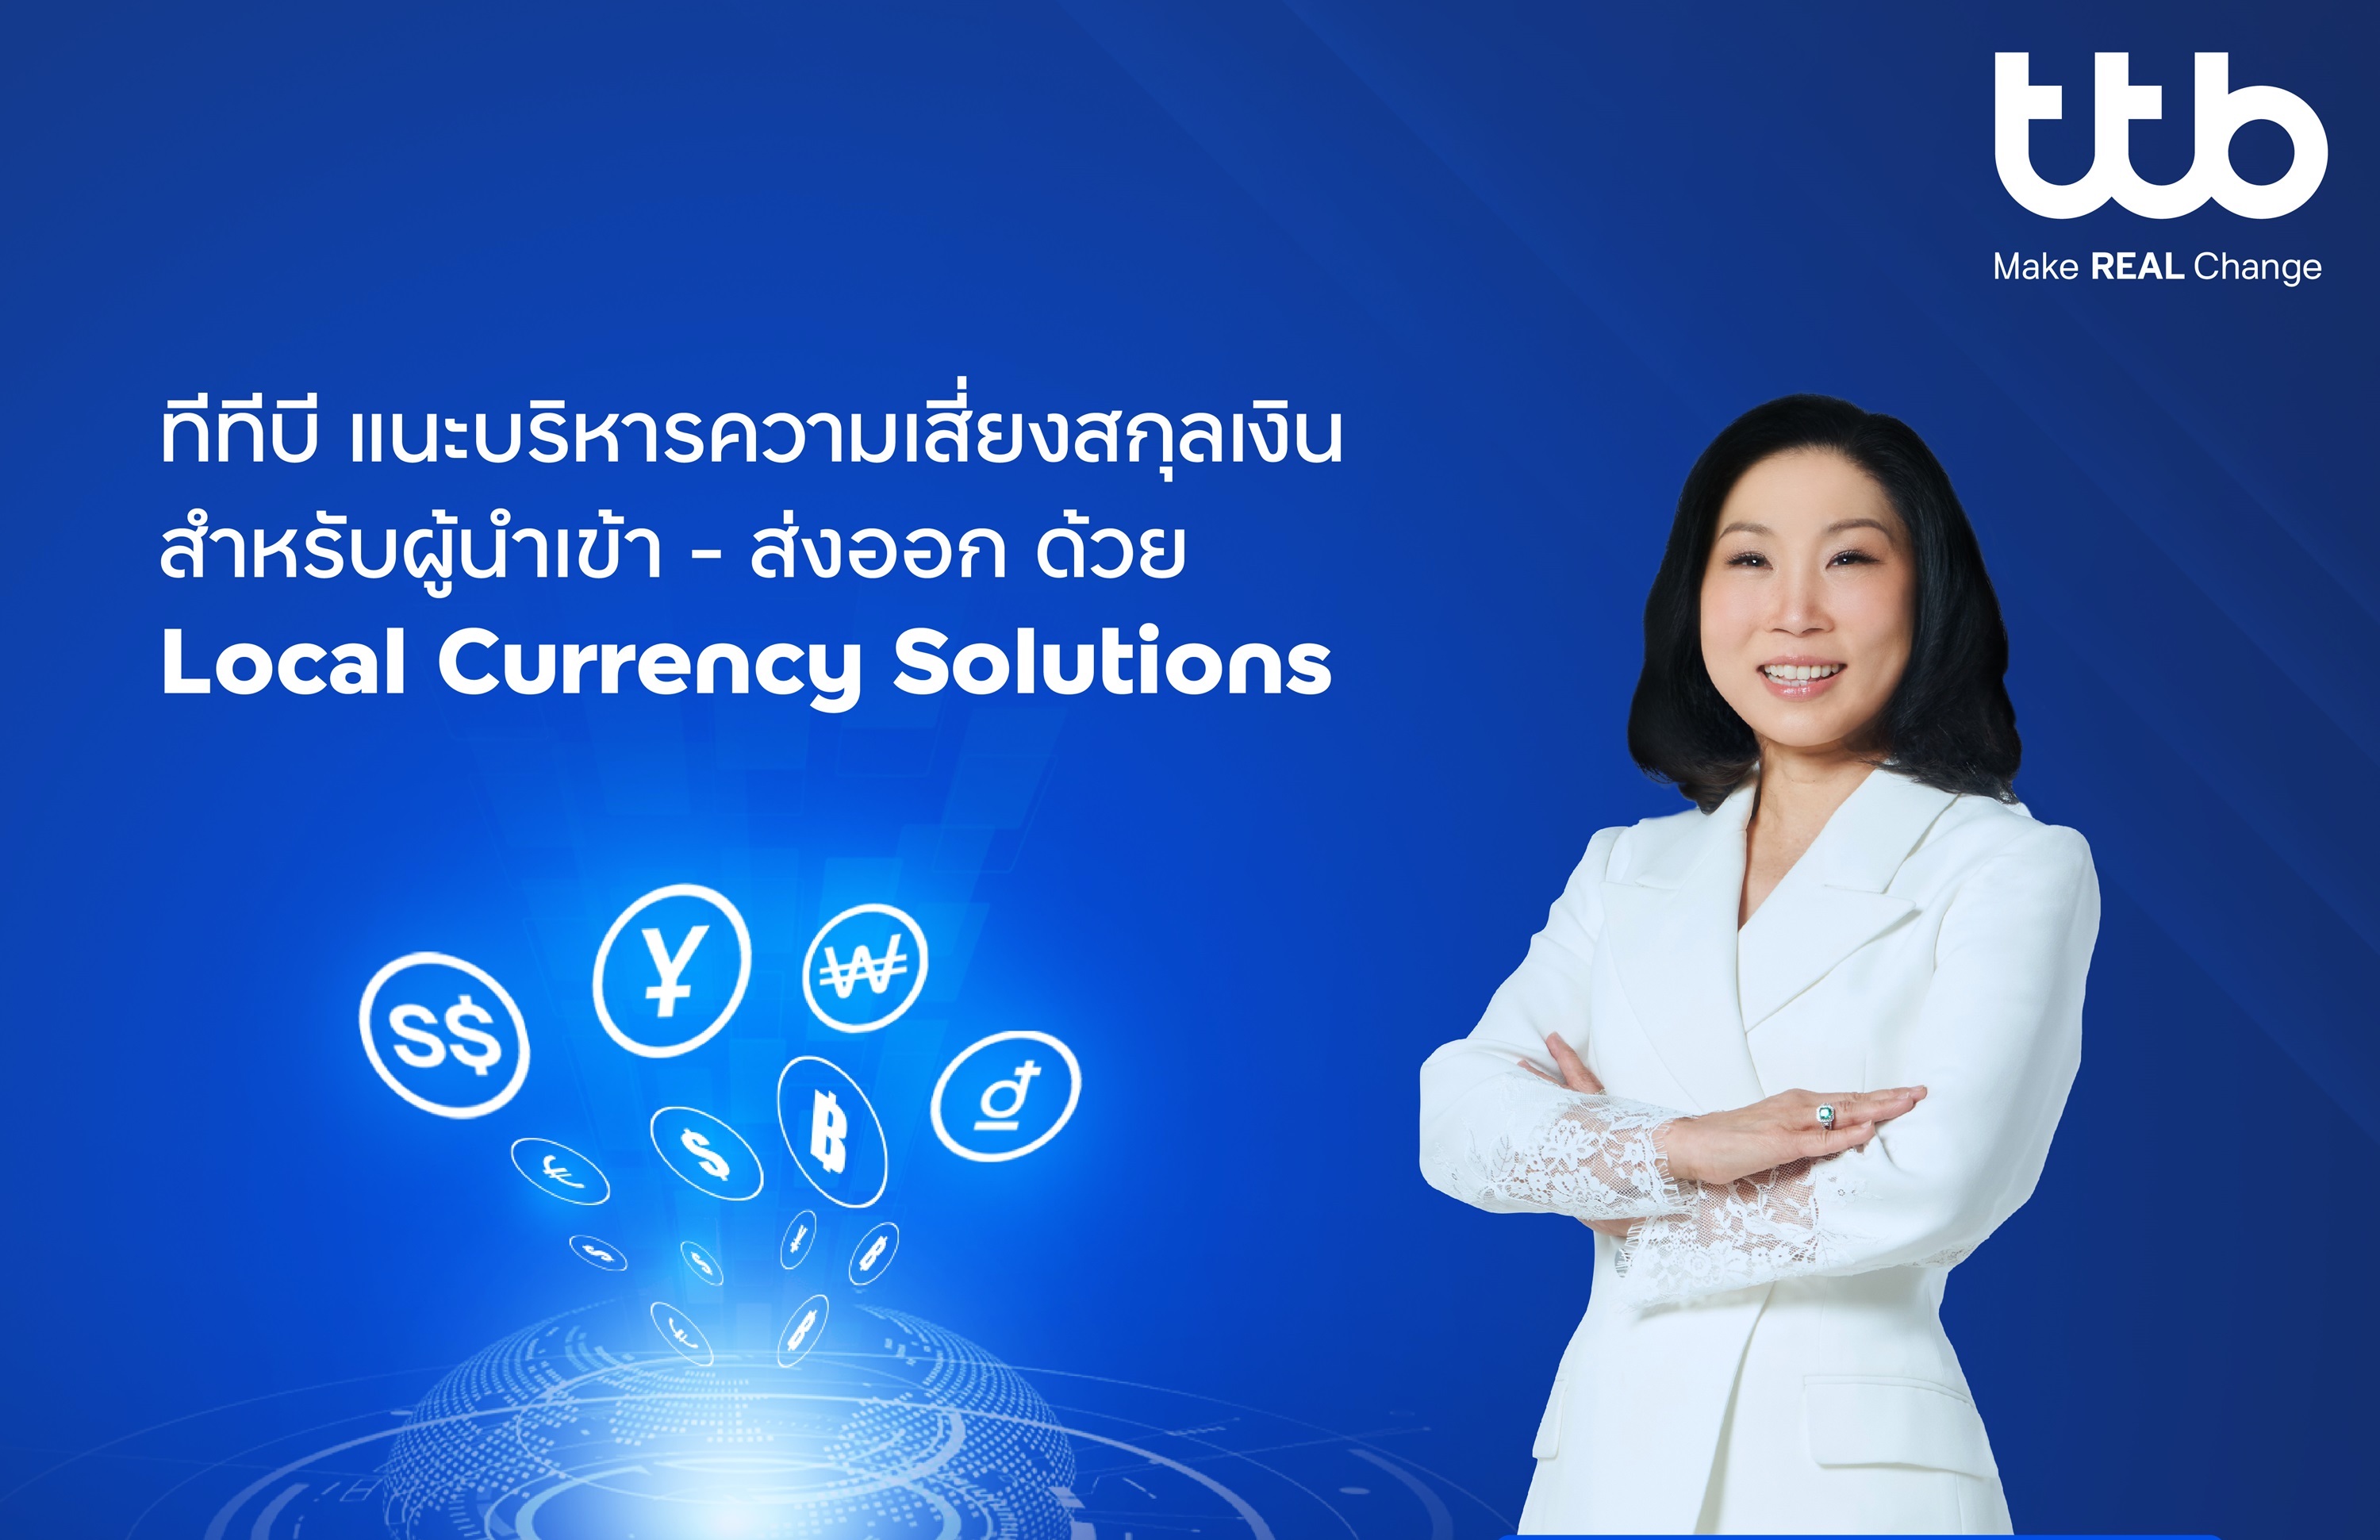 ทีทีบี แนะรับมือความผันผวนเงินตราต่างประเทศ ด้วยบริการ Local Currency Solutions